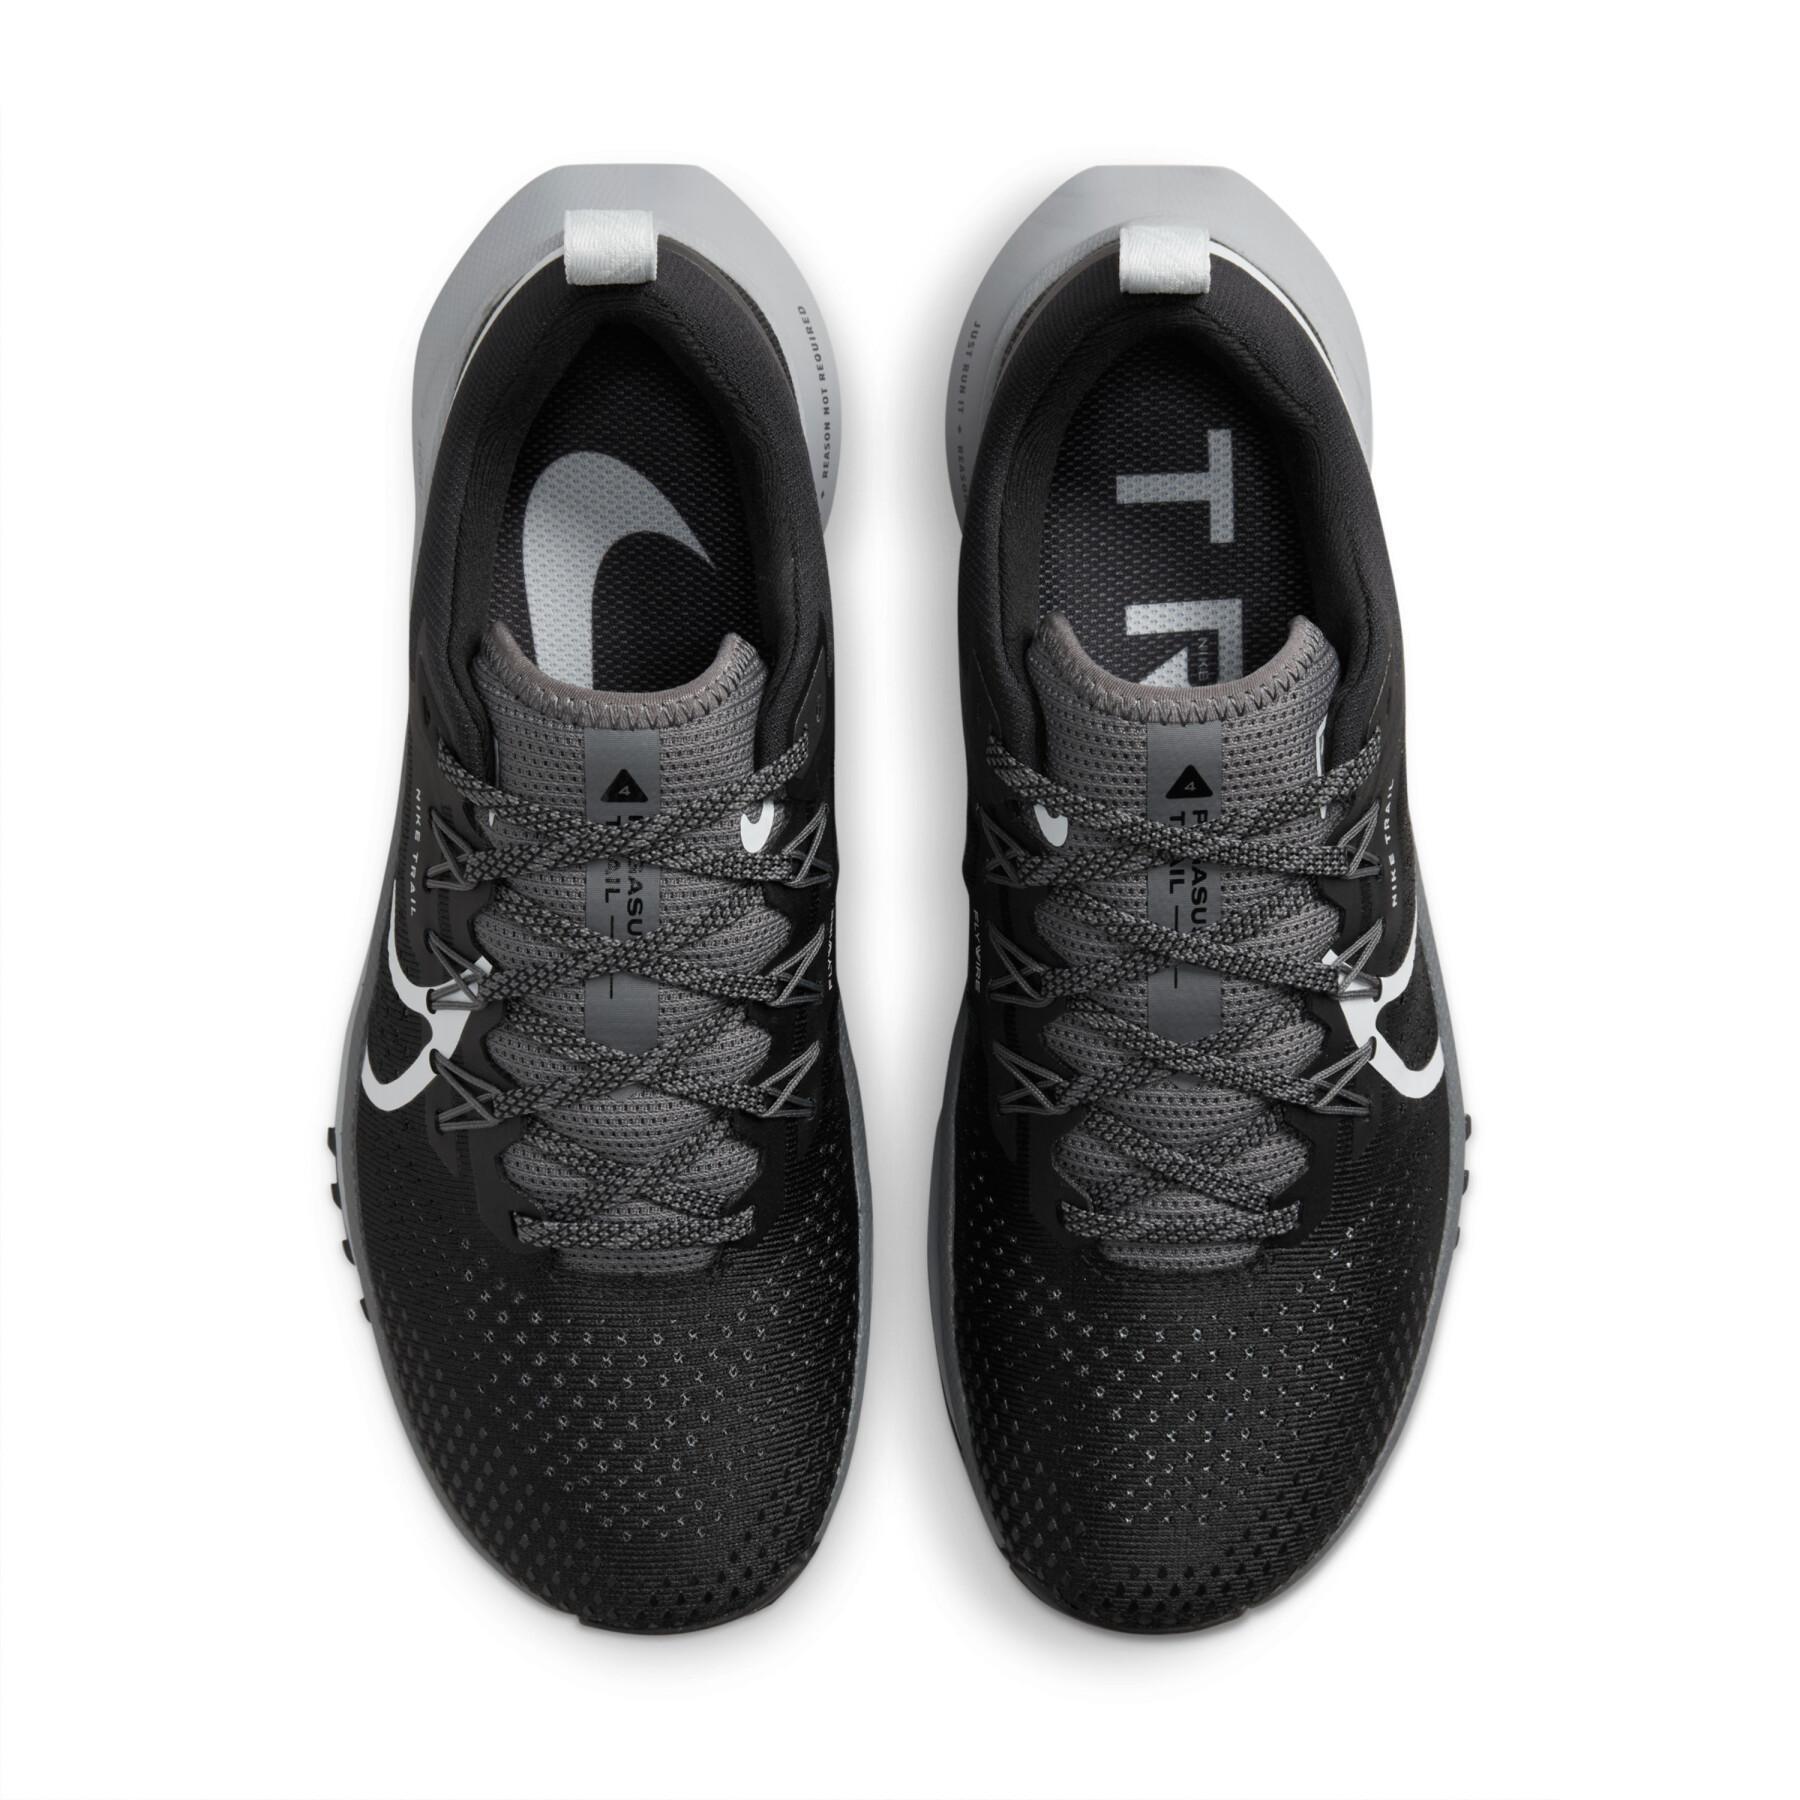 Trailschoenen Nike